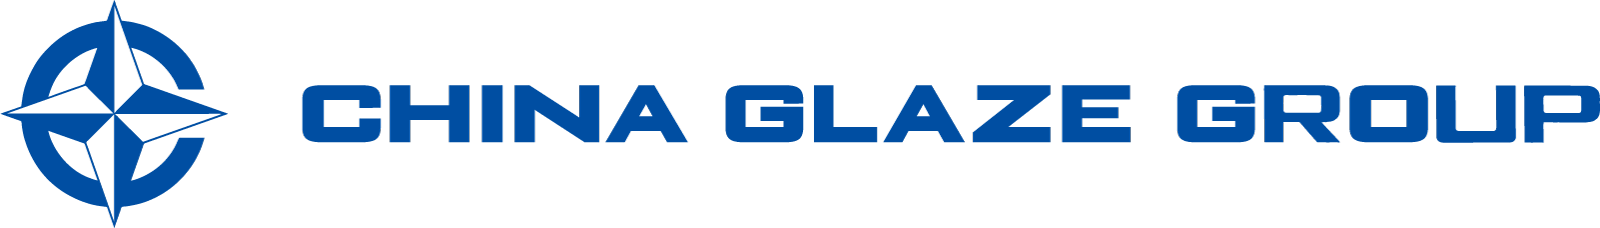 ガラス粉末やガラスパウダーやセラミックスフリット釉薬を製造するChina Glaze Co., Ltd.（和名：チャイナグレーズ株式会社）は台湾本社のガラス粉末やセラミックスピグメントの製造カンパニー。 導電ペースト用ガラス粉末、自動車LEDライト用蛍光体分散ガラス、プロジェクター用蛍光体分散ガラス、建材デジタルプリントカラー顔料などを製造してます。ガラス粉末、ガラスパウダー、ガラスフリット、ガラス微粉末、セラミック釉薬を利用した、LTCC、PiG、顔料、建材、などの材料として研究開発から製造をサポートします。2022年5月に日本窓口としてChina Glaze Co., Ltd.（和名：チャイナグレーズ株式会社） 東京デスクを設立しました。